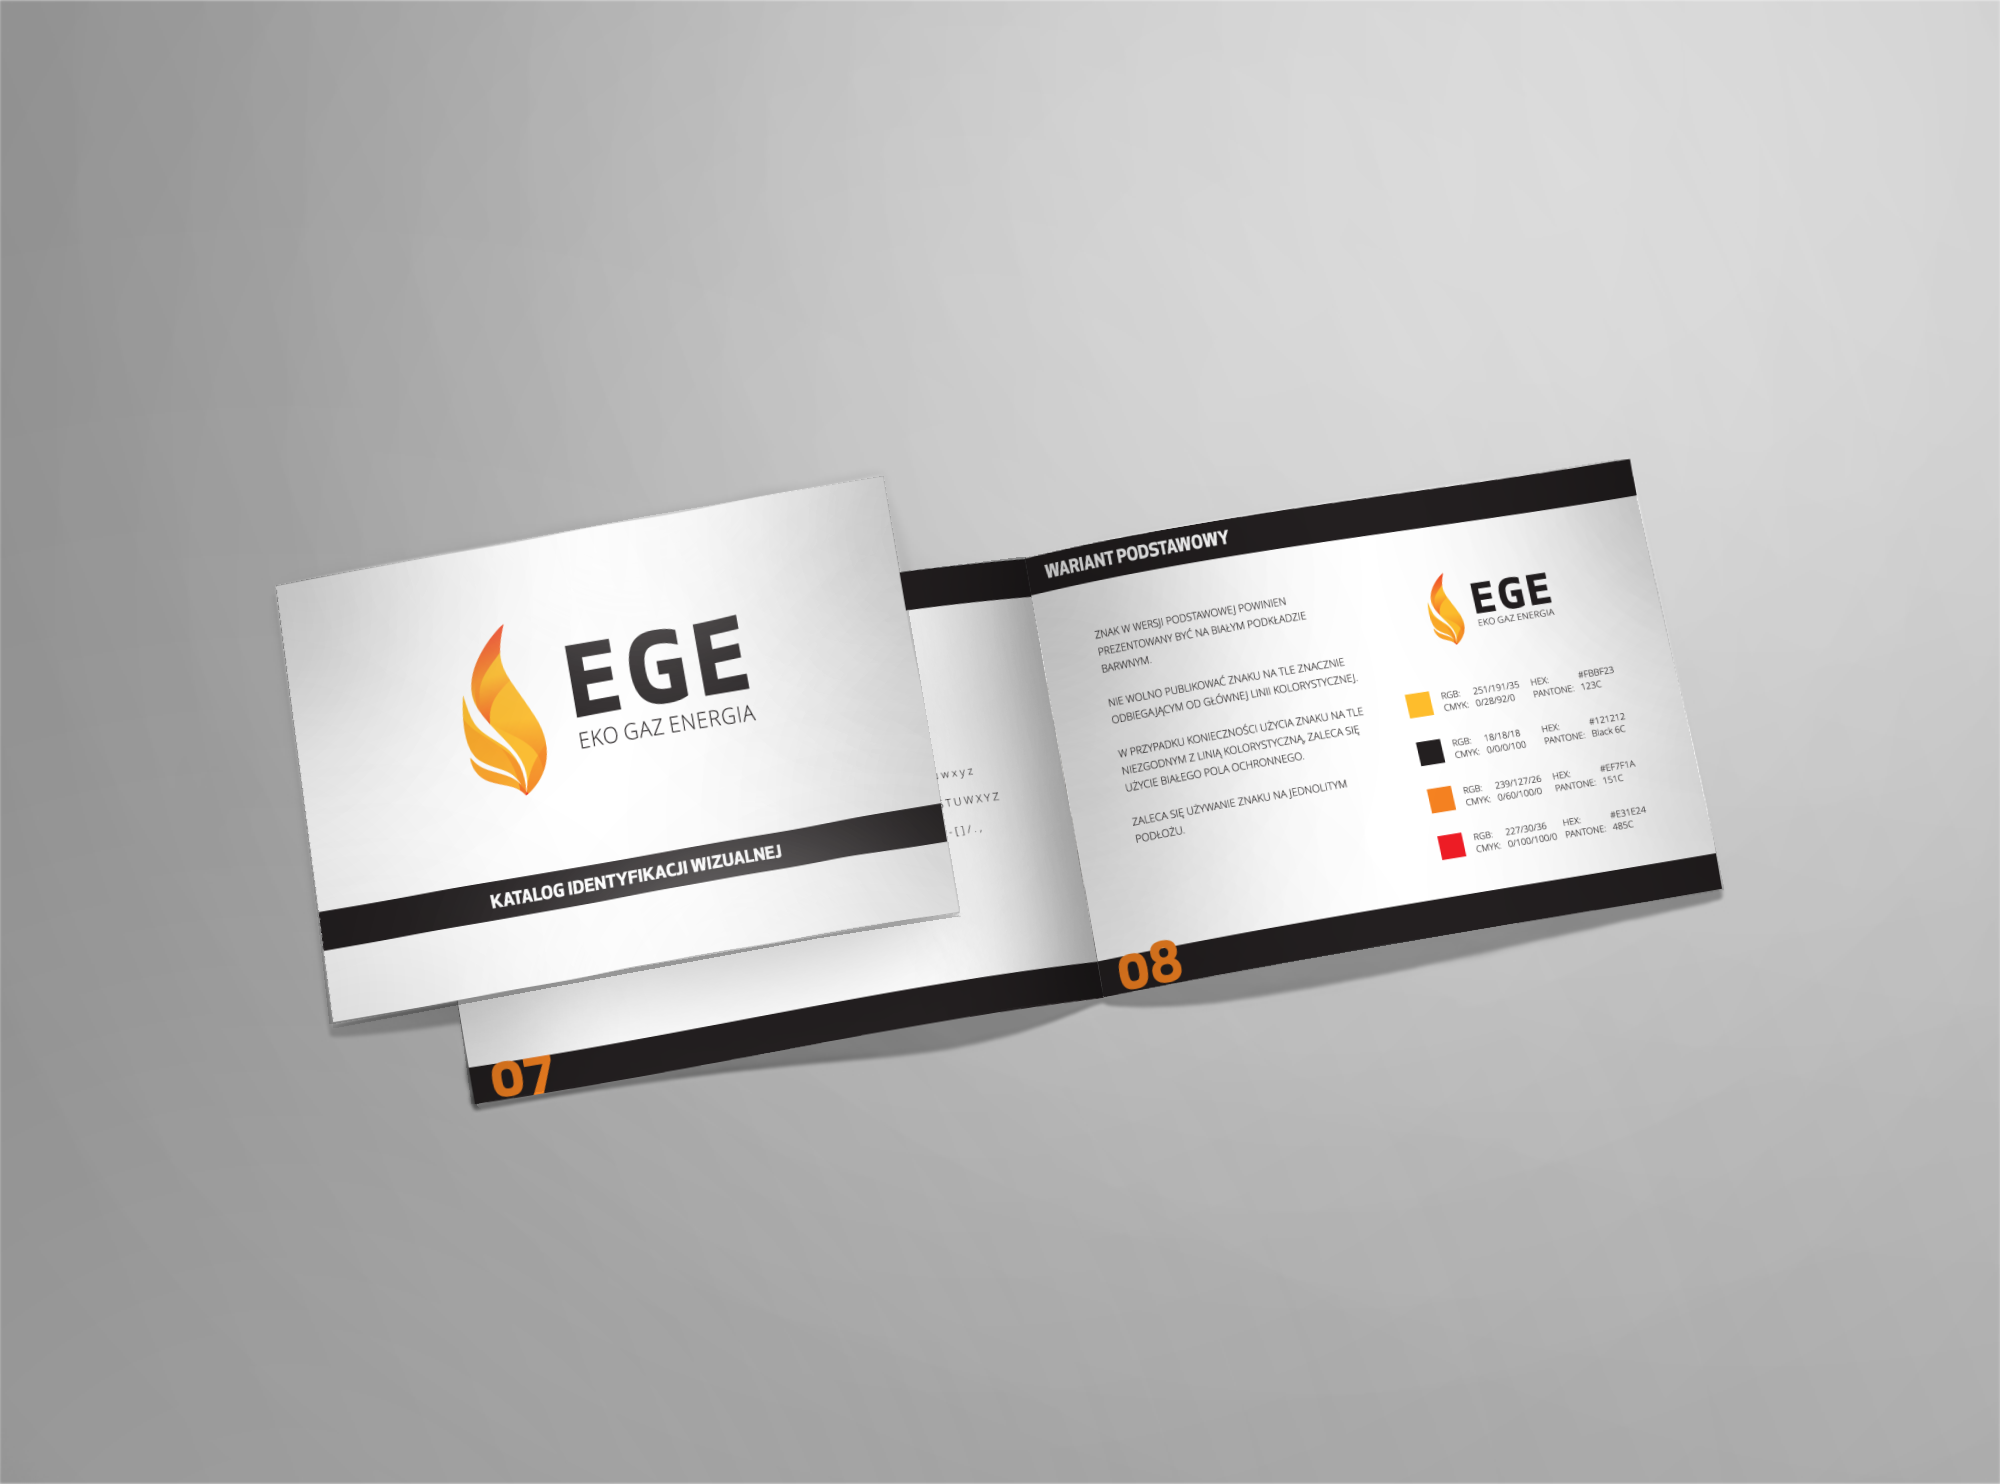 EGE – Eko Gaz Energia